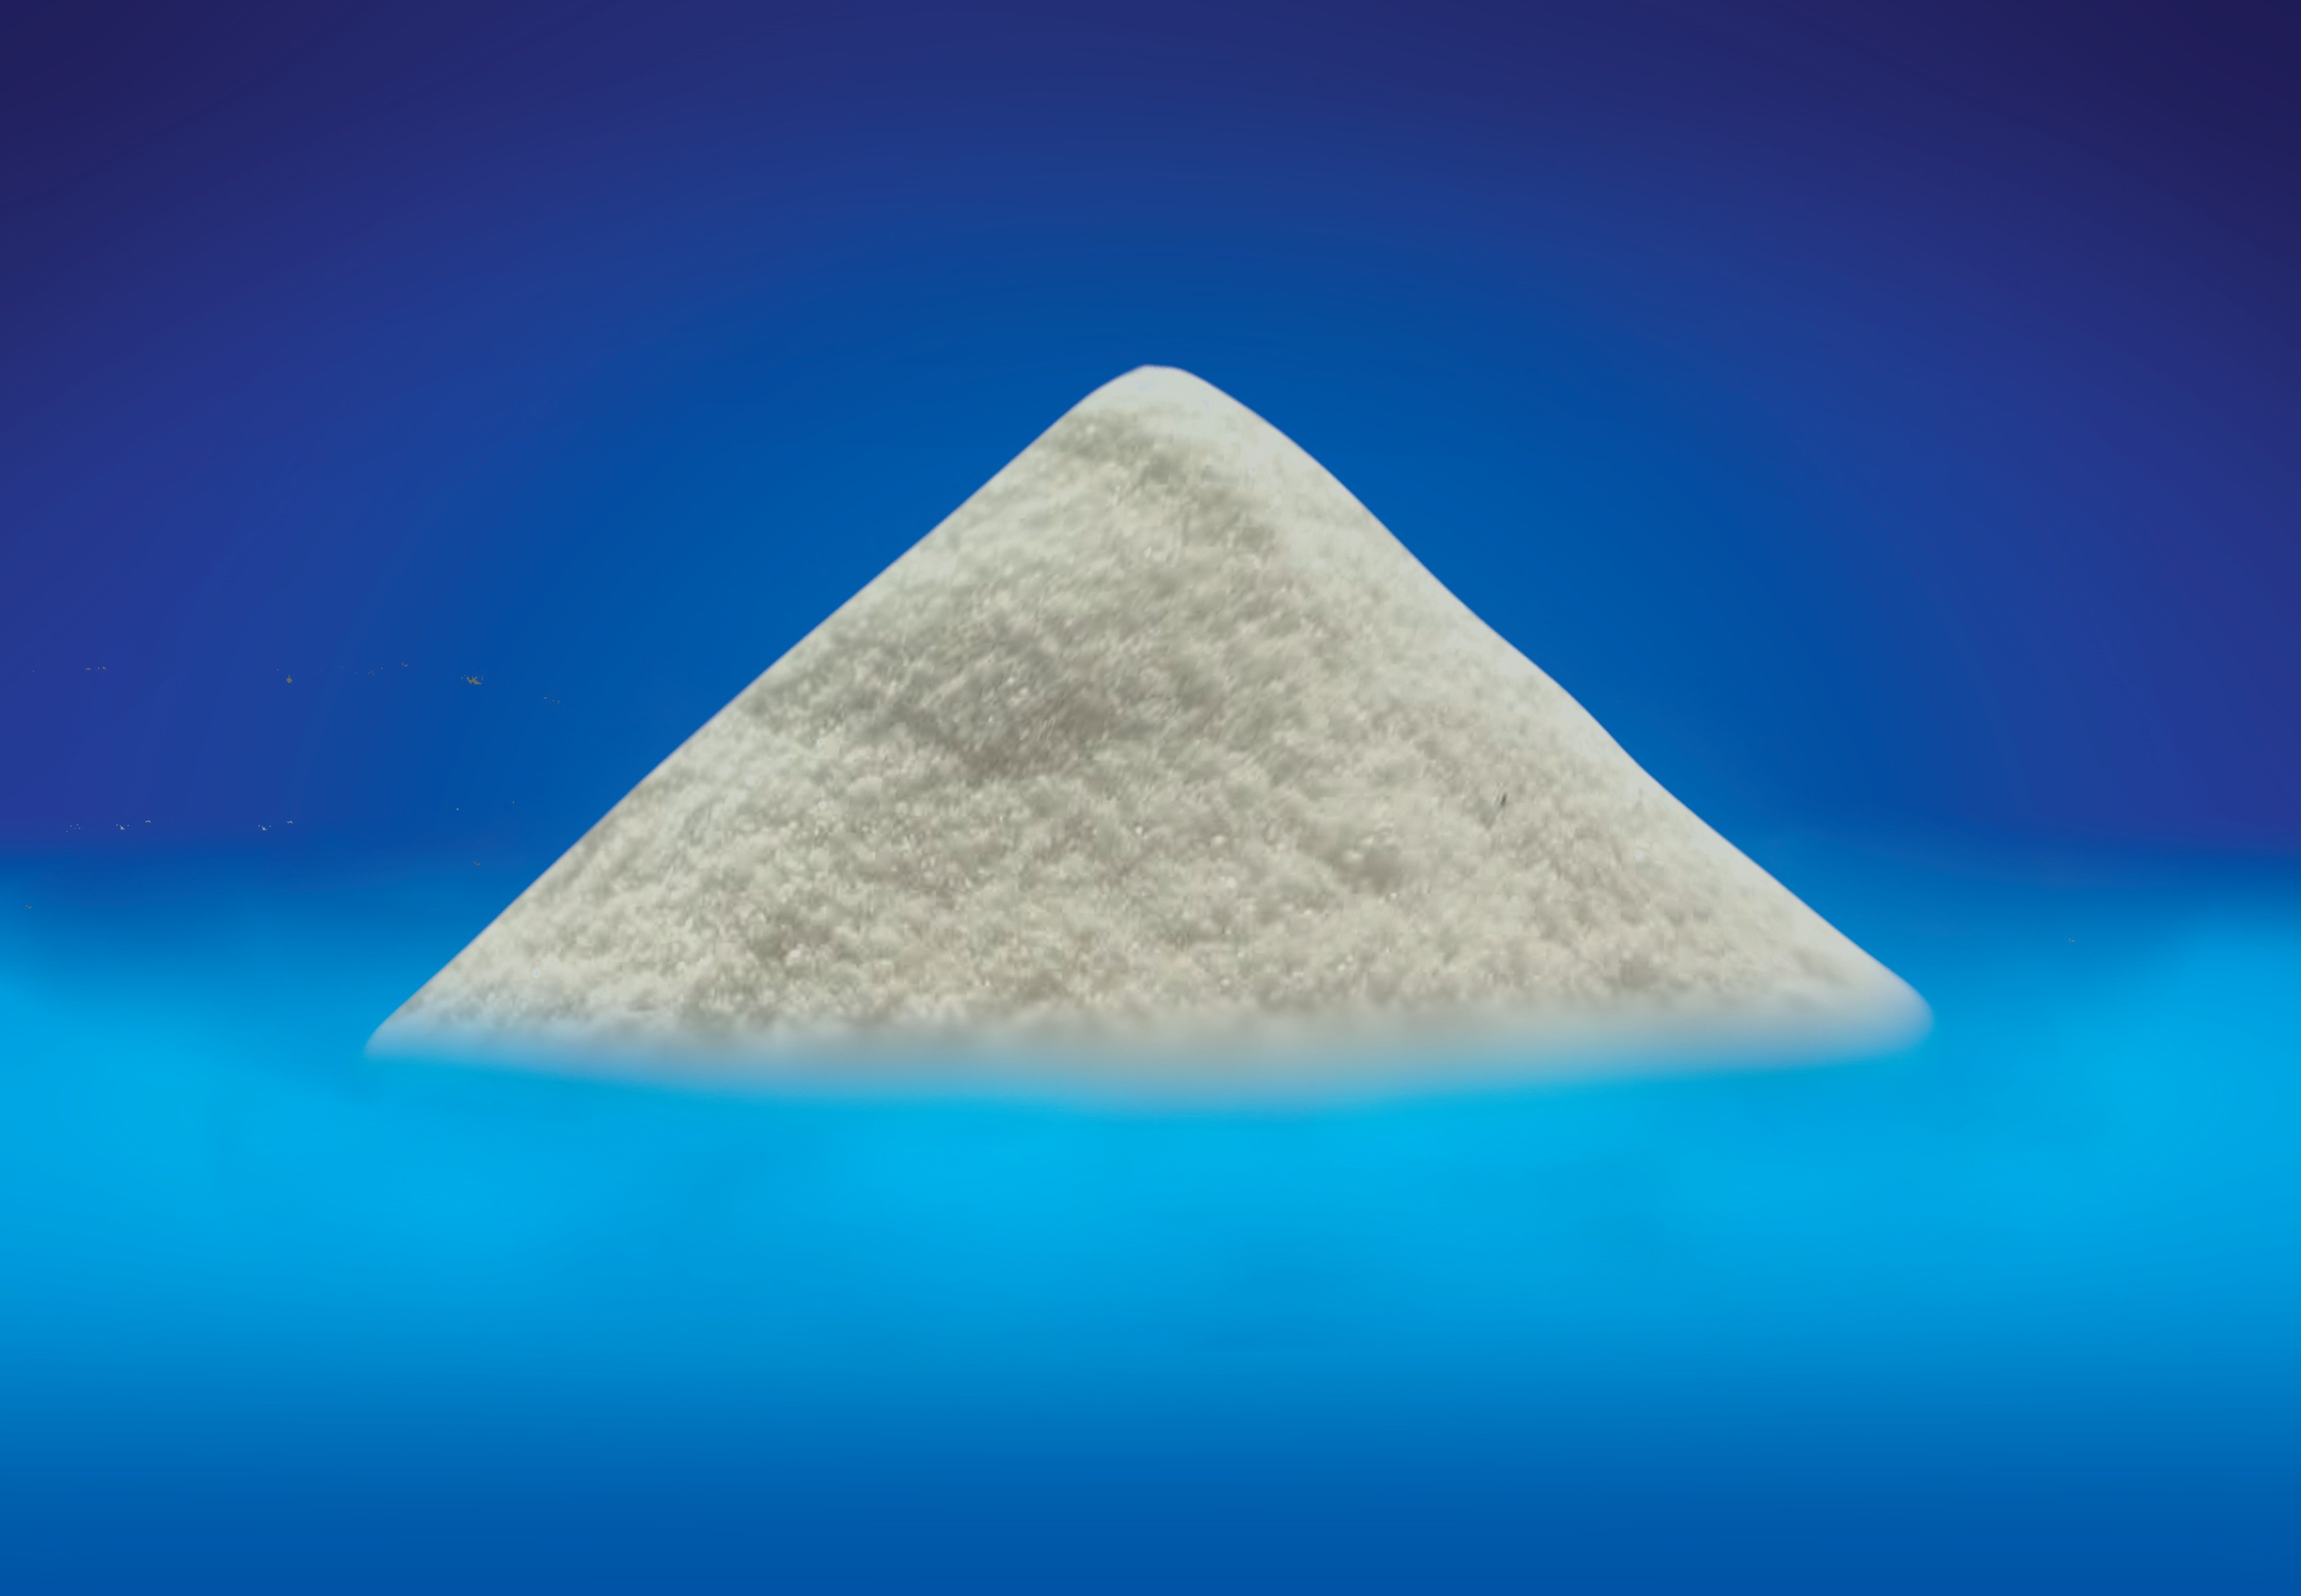 Aditivo para alimentación animal en polvo cristalino blanco de formiato de calcio 7